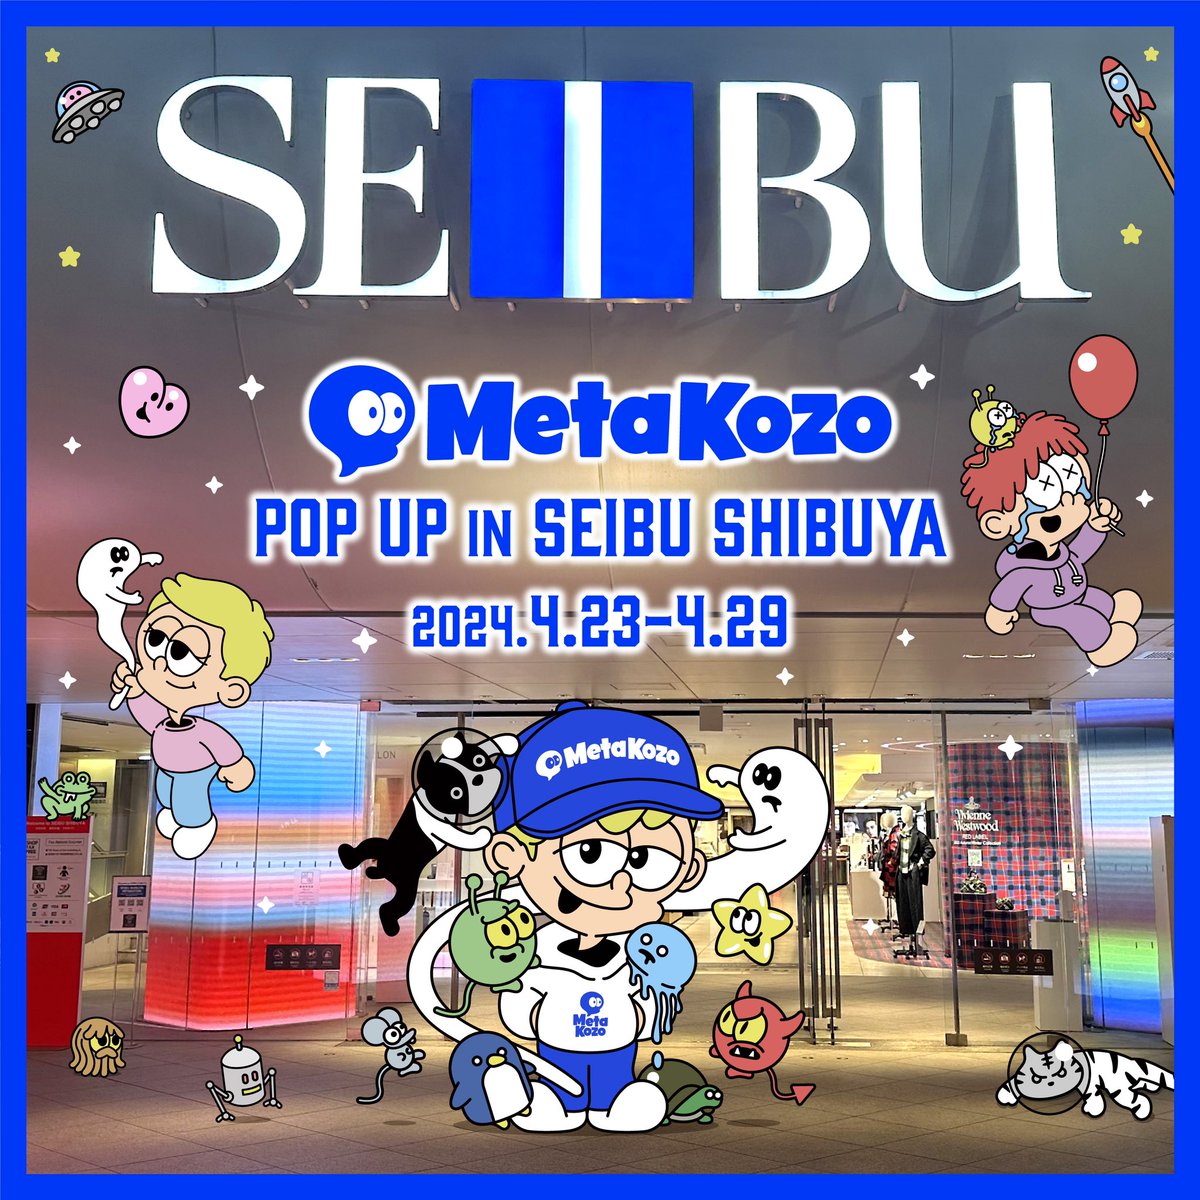 おはようございます！！

MetaKozo西武渋谷POPUP！！
連日すごい反響ですね💕
海外の人もお土産に買っていると聞きました☺️
ワールドワイドを感じますね☺️
リスペクトメタコゾーにMilDからギブアウェイしてますので、よければ参加してください☺️
#MetaKozo
#MetaKozo西武渋谷POPUP